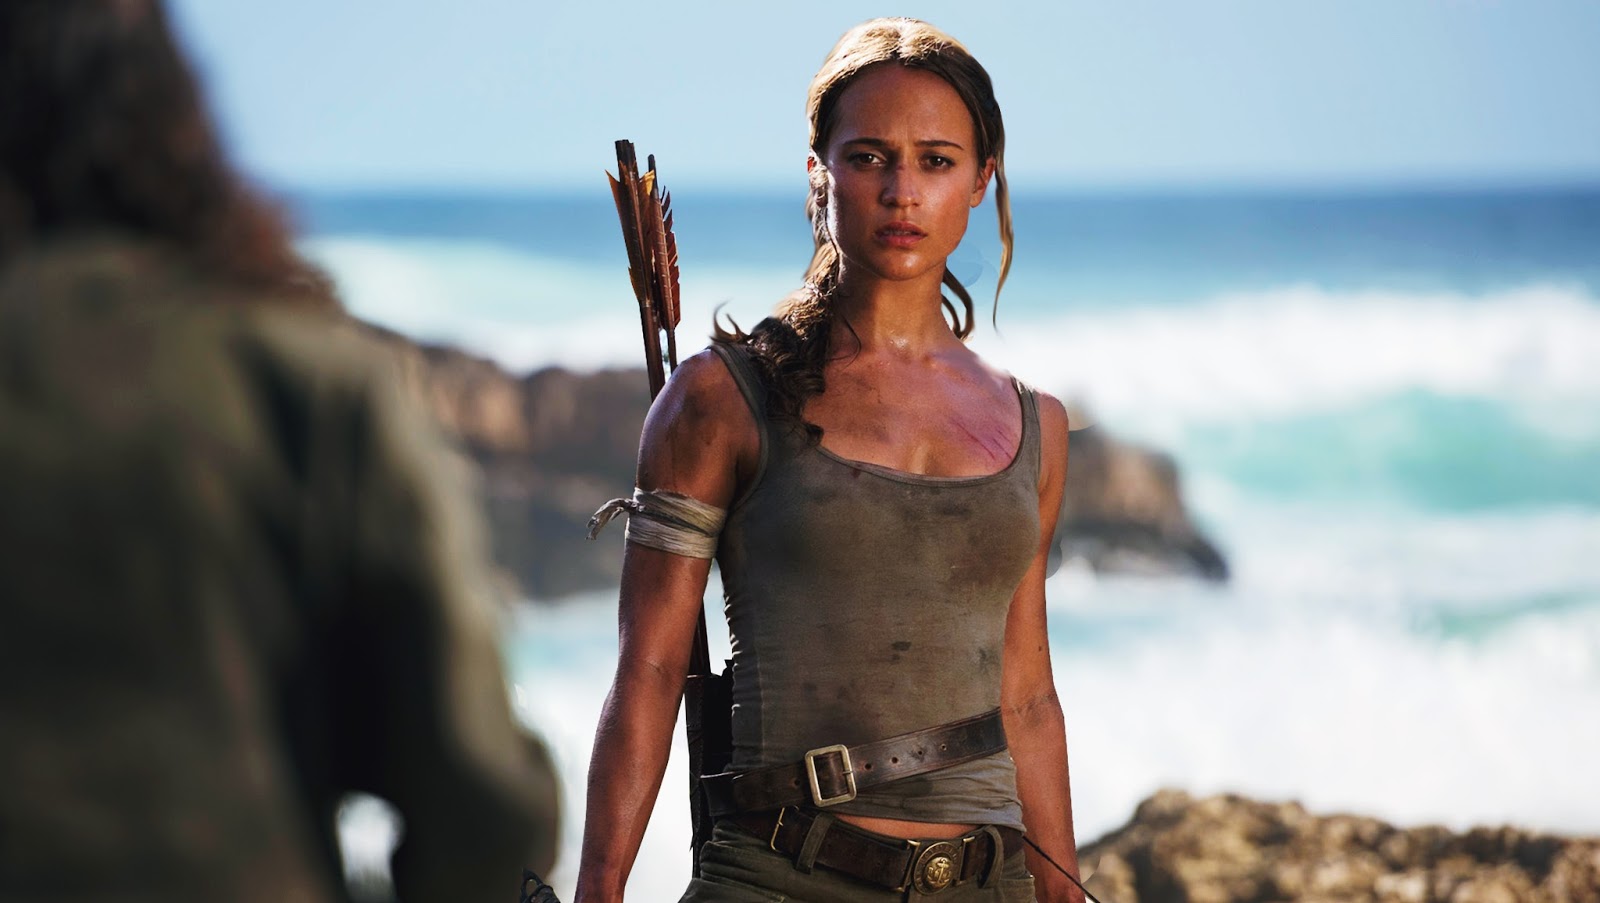 Sessão da Tarde de quarta-feira (3/6): Globo exibe filme Lara Croft - Tomb  Raider · Notícias da TV